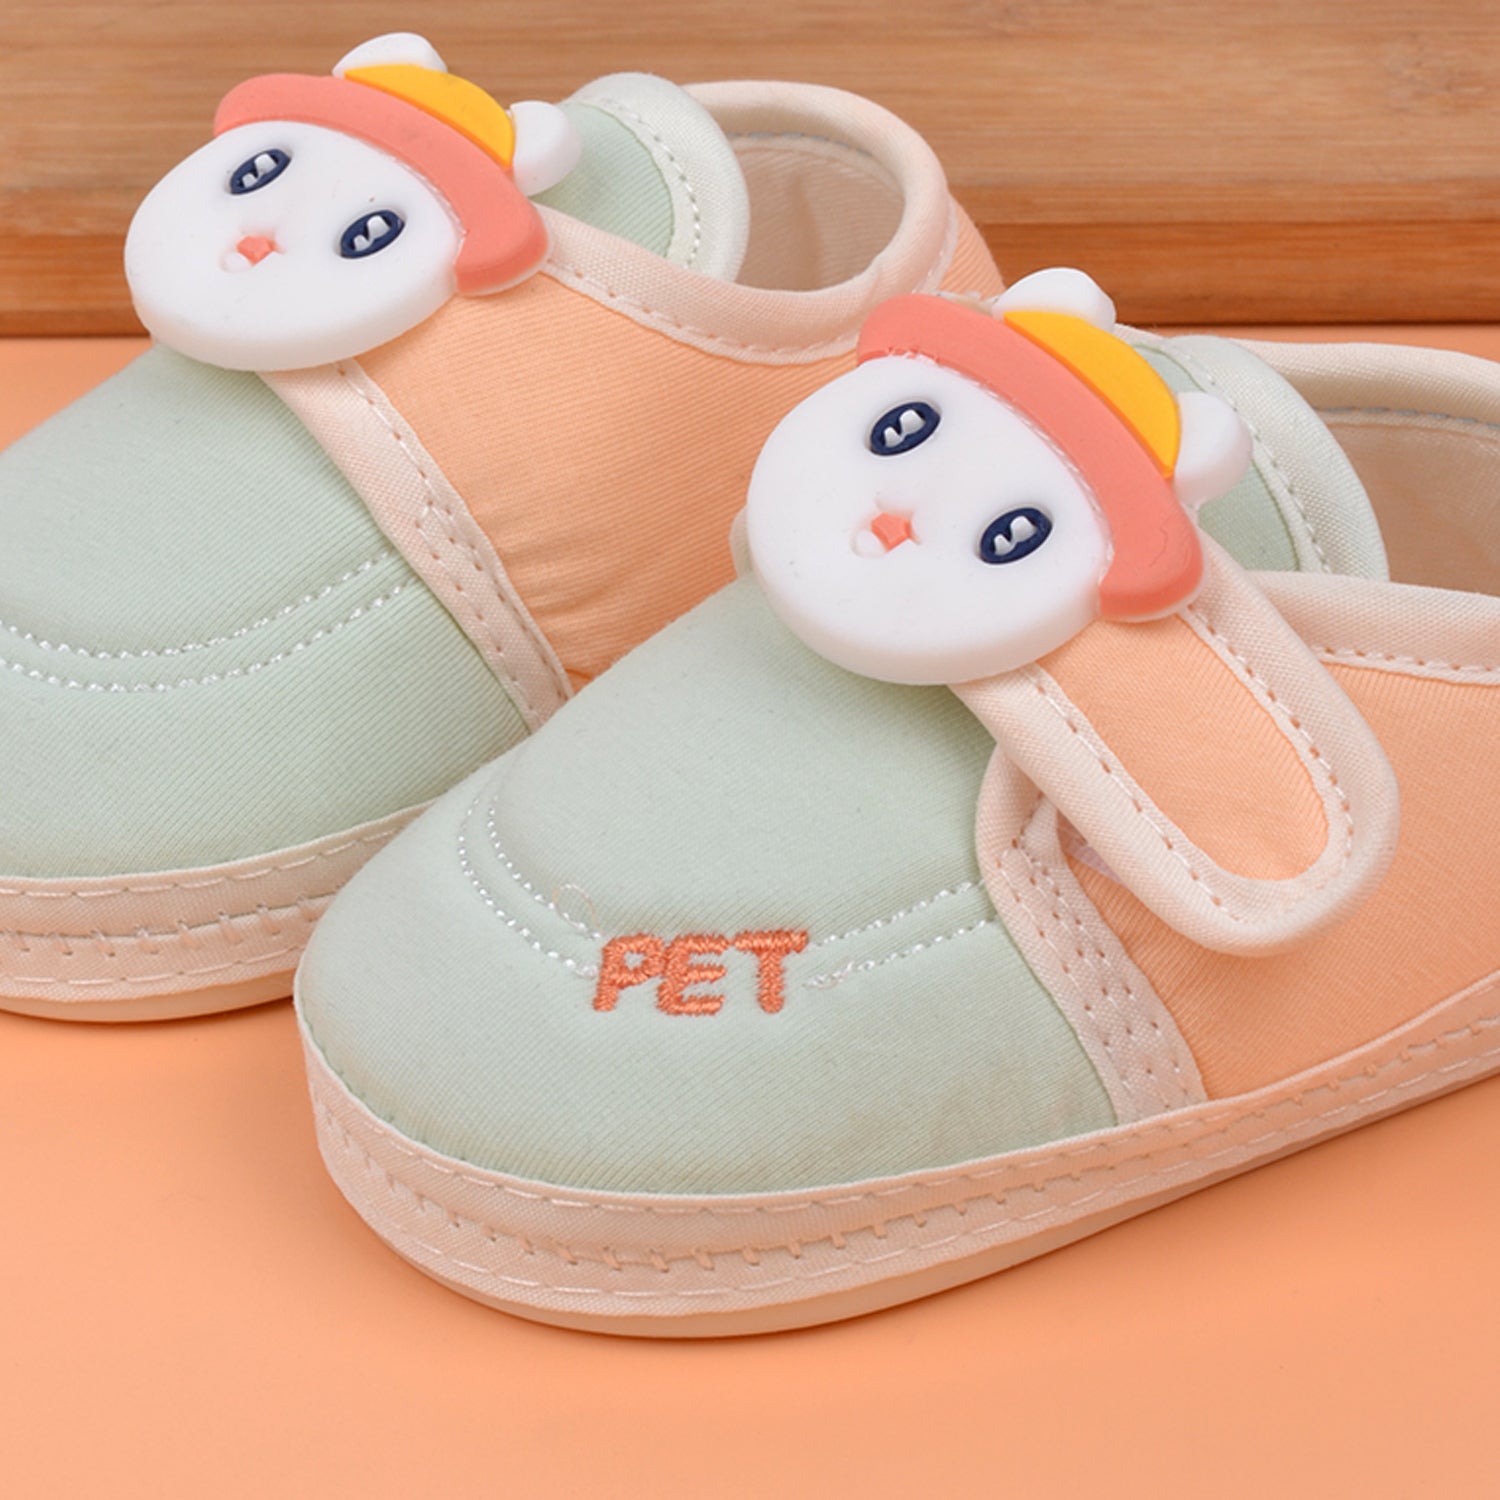 Footprints unisex baby soft  & trendy botties | Pack Of 2